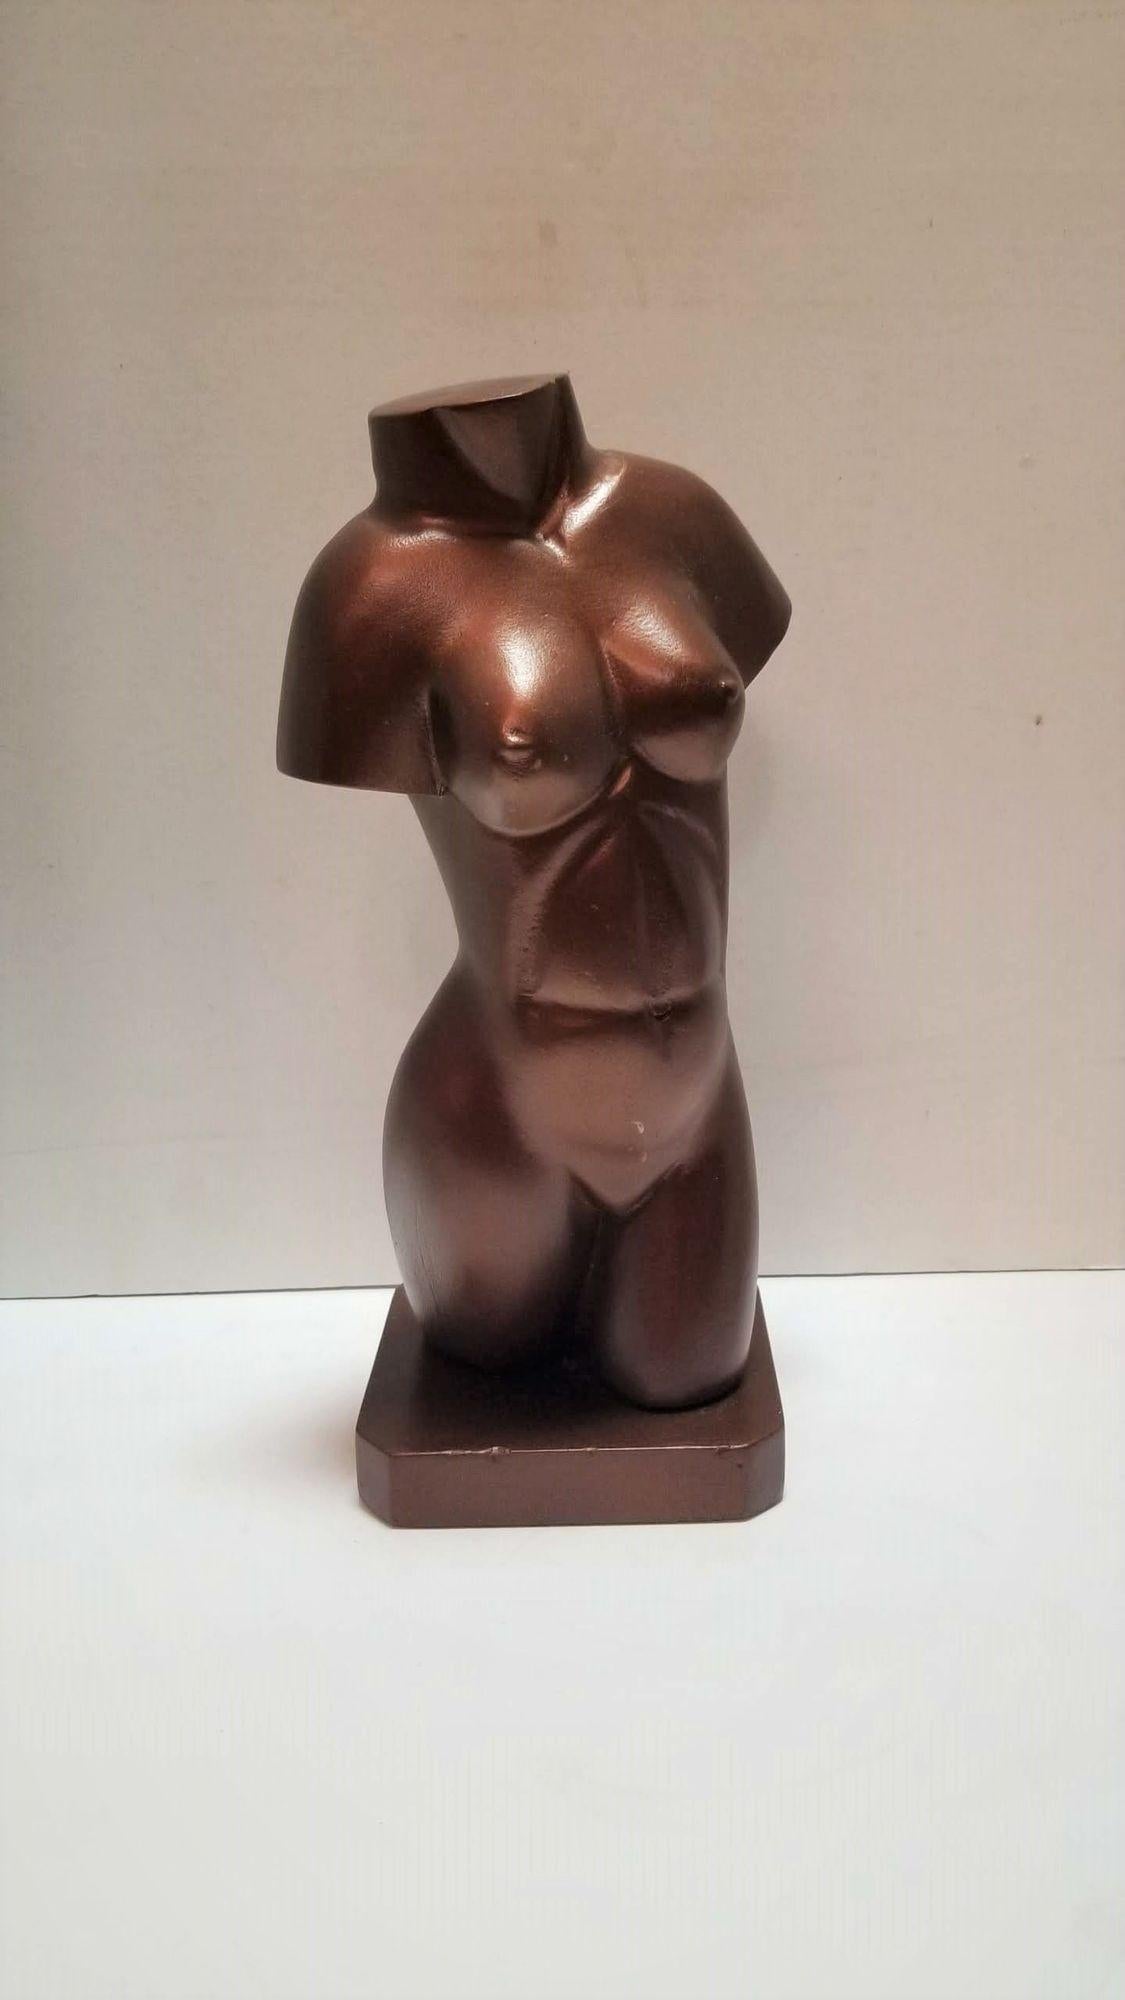 Statue en bois d'un buste de femme nue en bronze
Une sculpture vintage en bois d'un buste de femme nue peint en bronze qui capture l'essence de la forme féminine. L'utilisation du bois comme matériau principal ajoute une qualité de légèreté, tandis